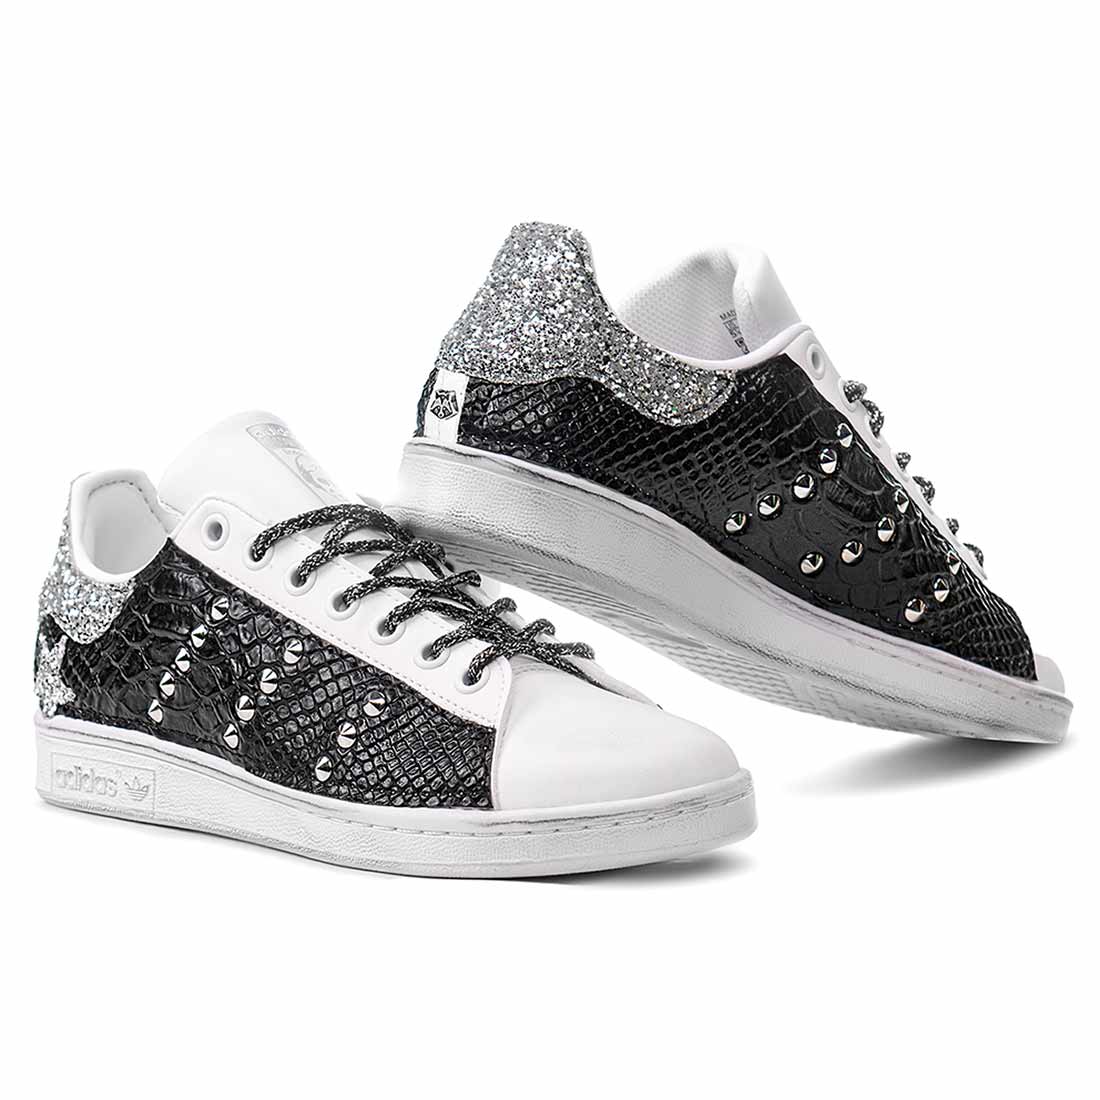 Scarpe da ginnastica adidas bianche con borchie e brillantini argento pitonate nere lucido e lacci glitterati